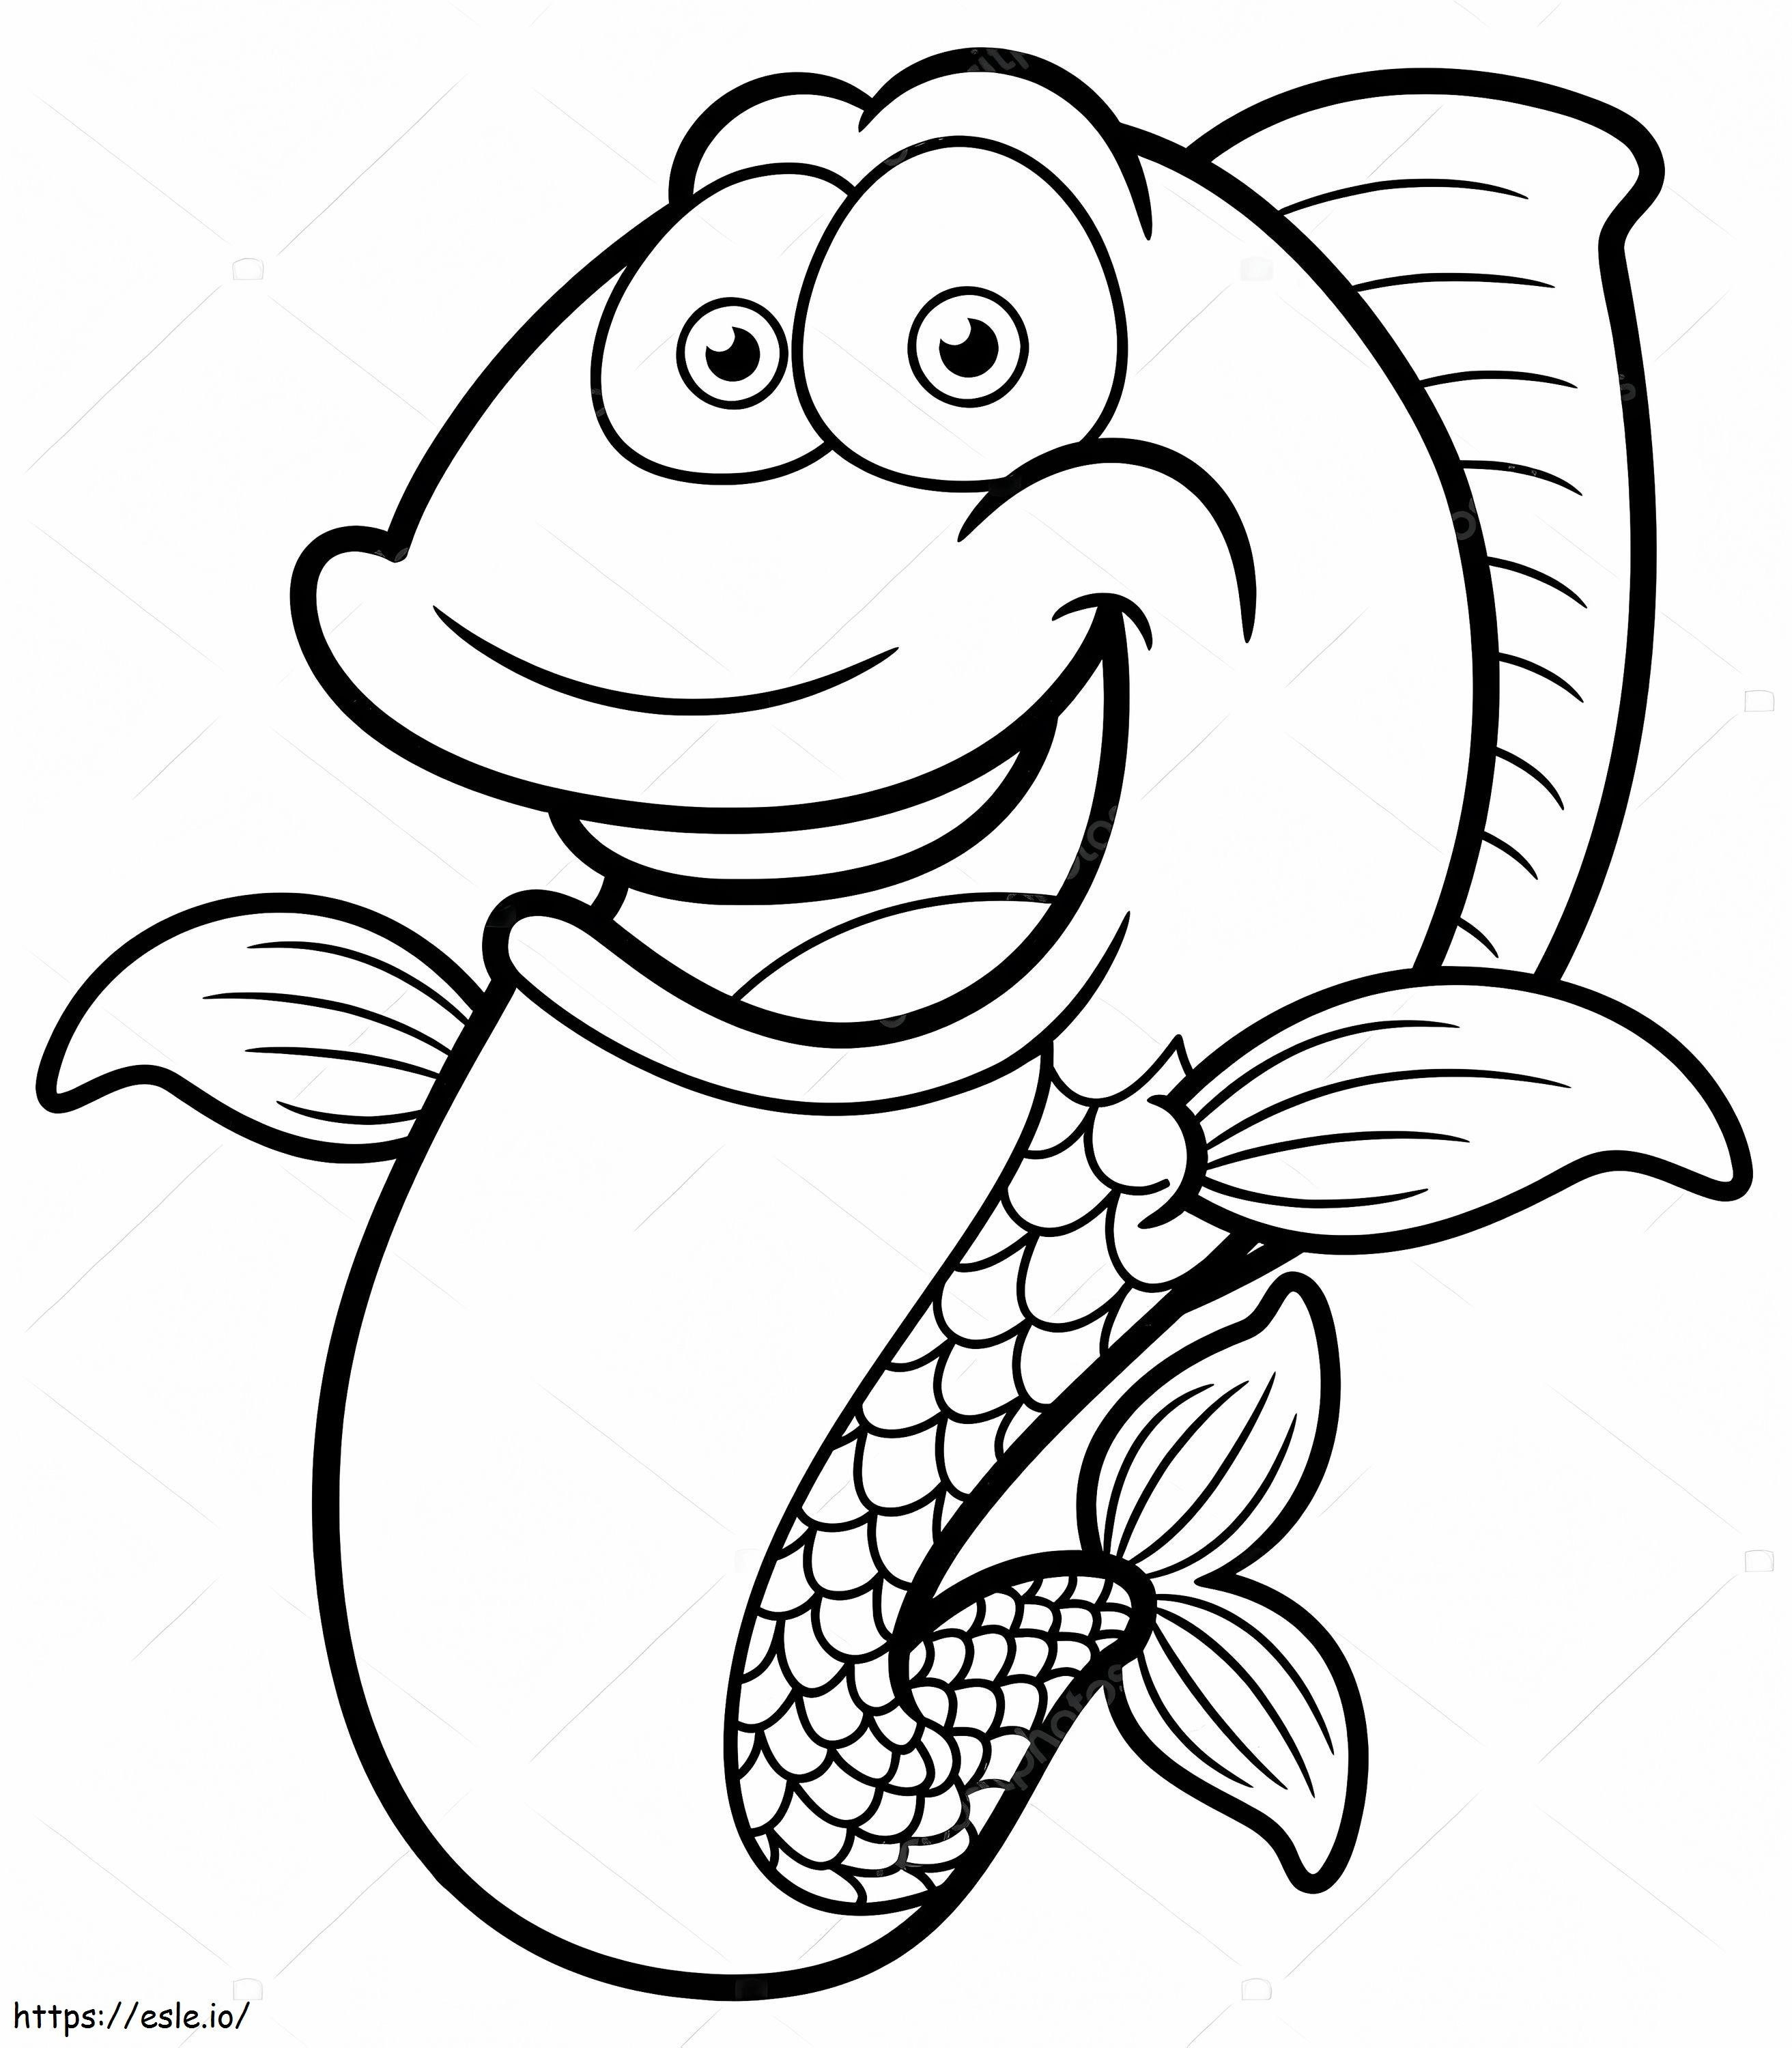 Coloriage Dessin animé drôle de poisson à imprimer dessin